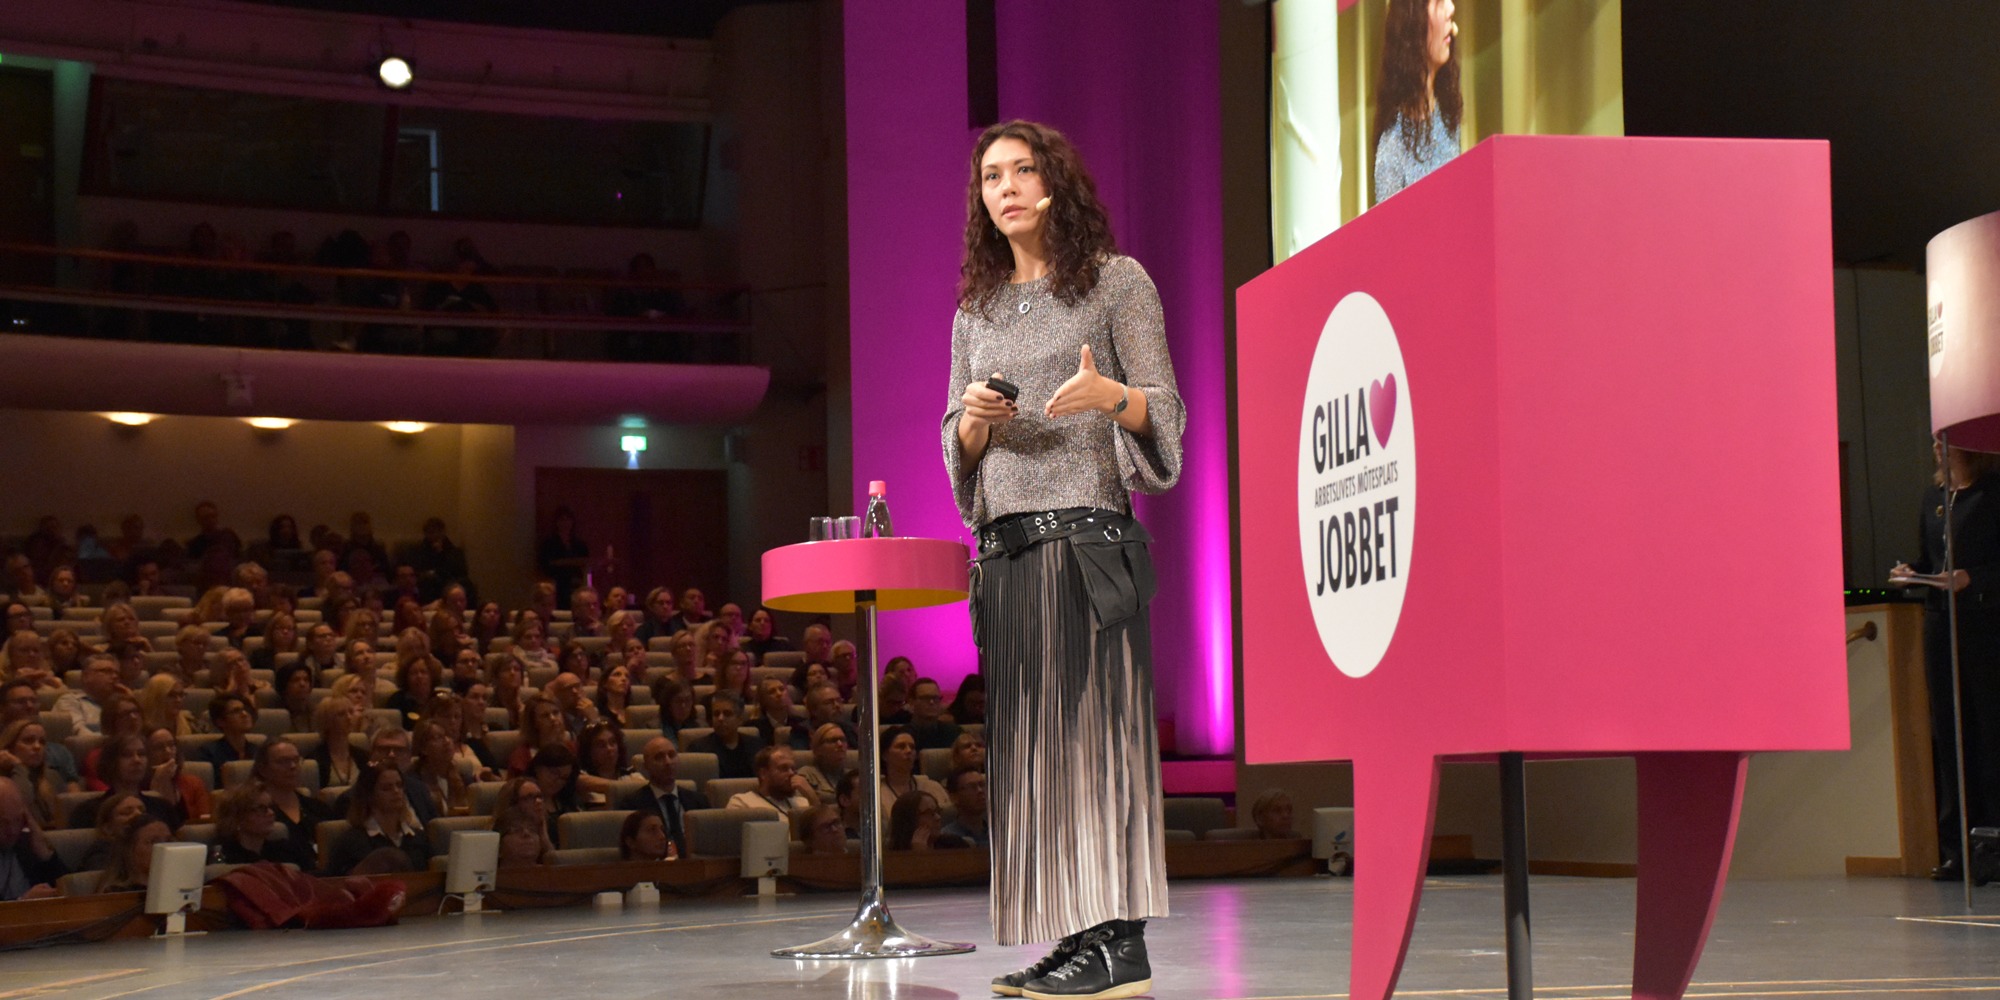 Forskaren Cecilia Berlin, klädd i lång kjol, talar till en stor publik från en scen på arbetsmiljökonferensen Gilla Jobbet